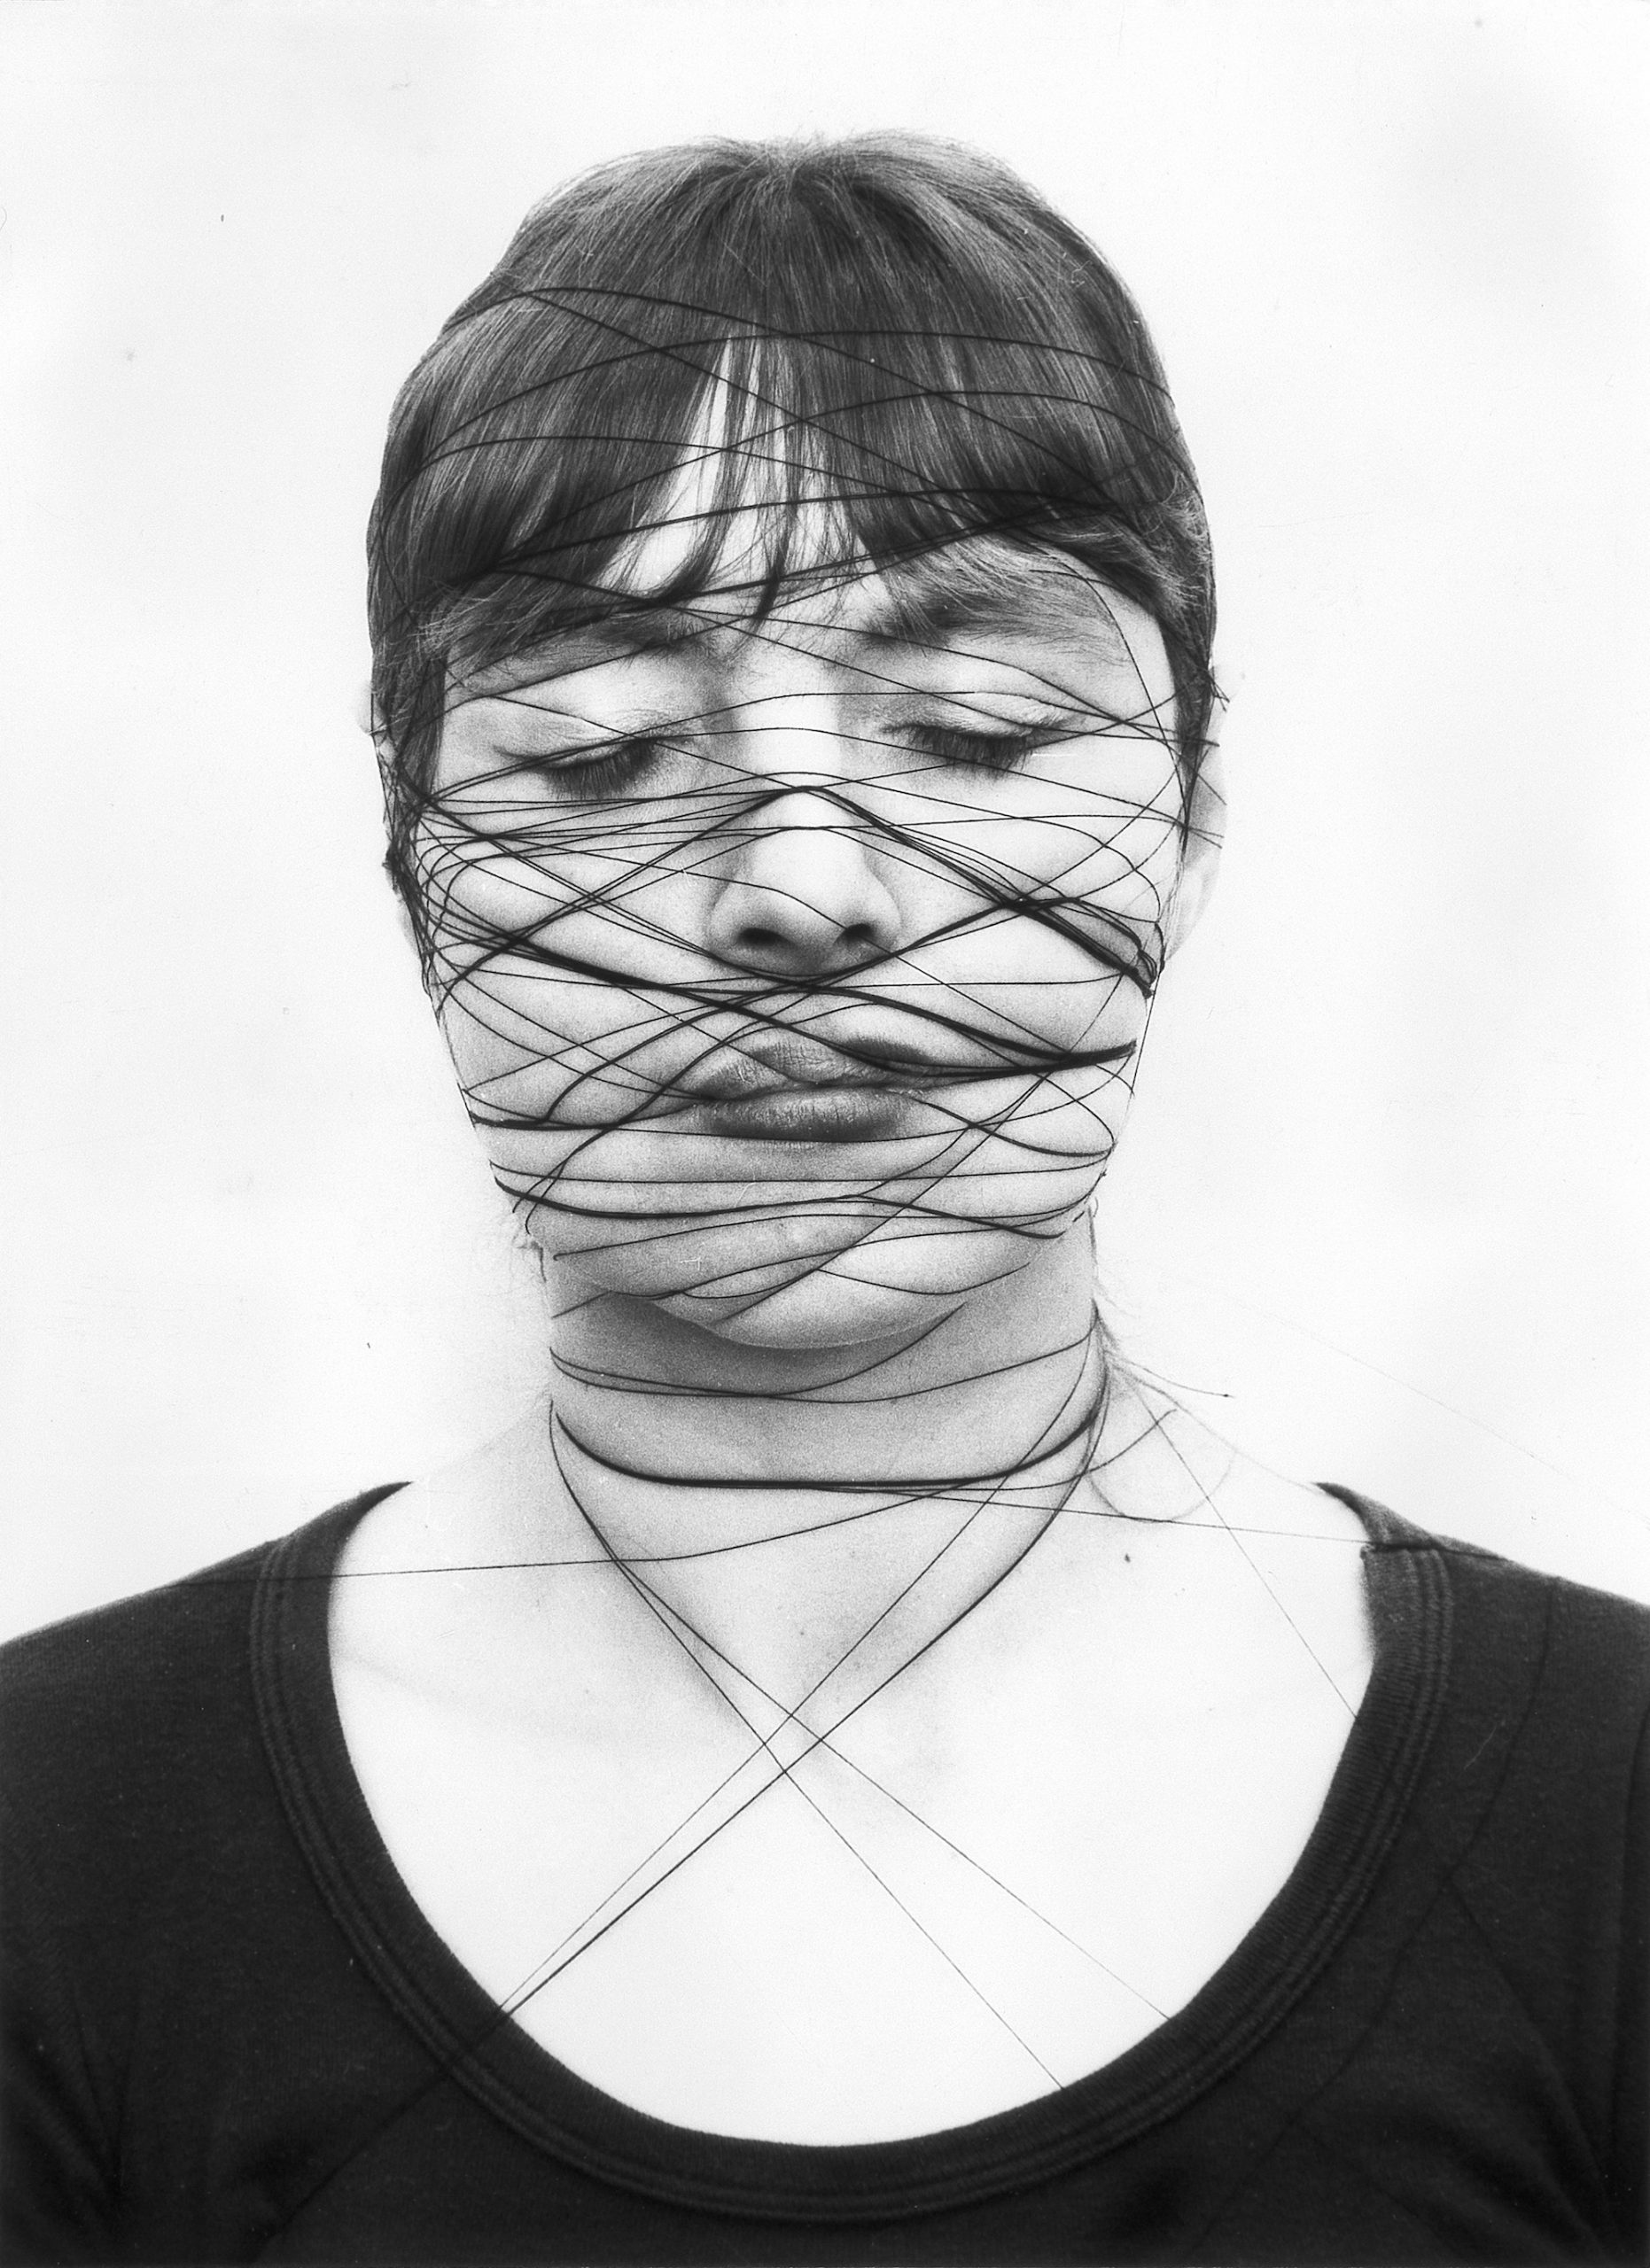 Annegret Soltau, Selbst, 1975. Courtesy Annegret Soltau / Bildrecht / Collection Verbund